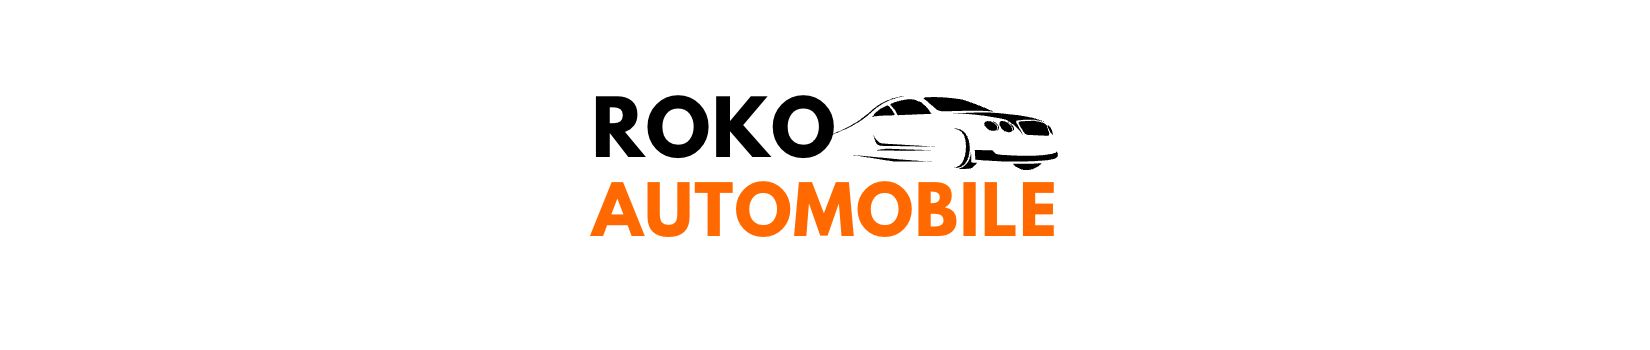 ROKO Automobile